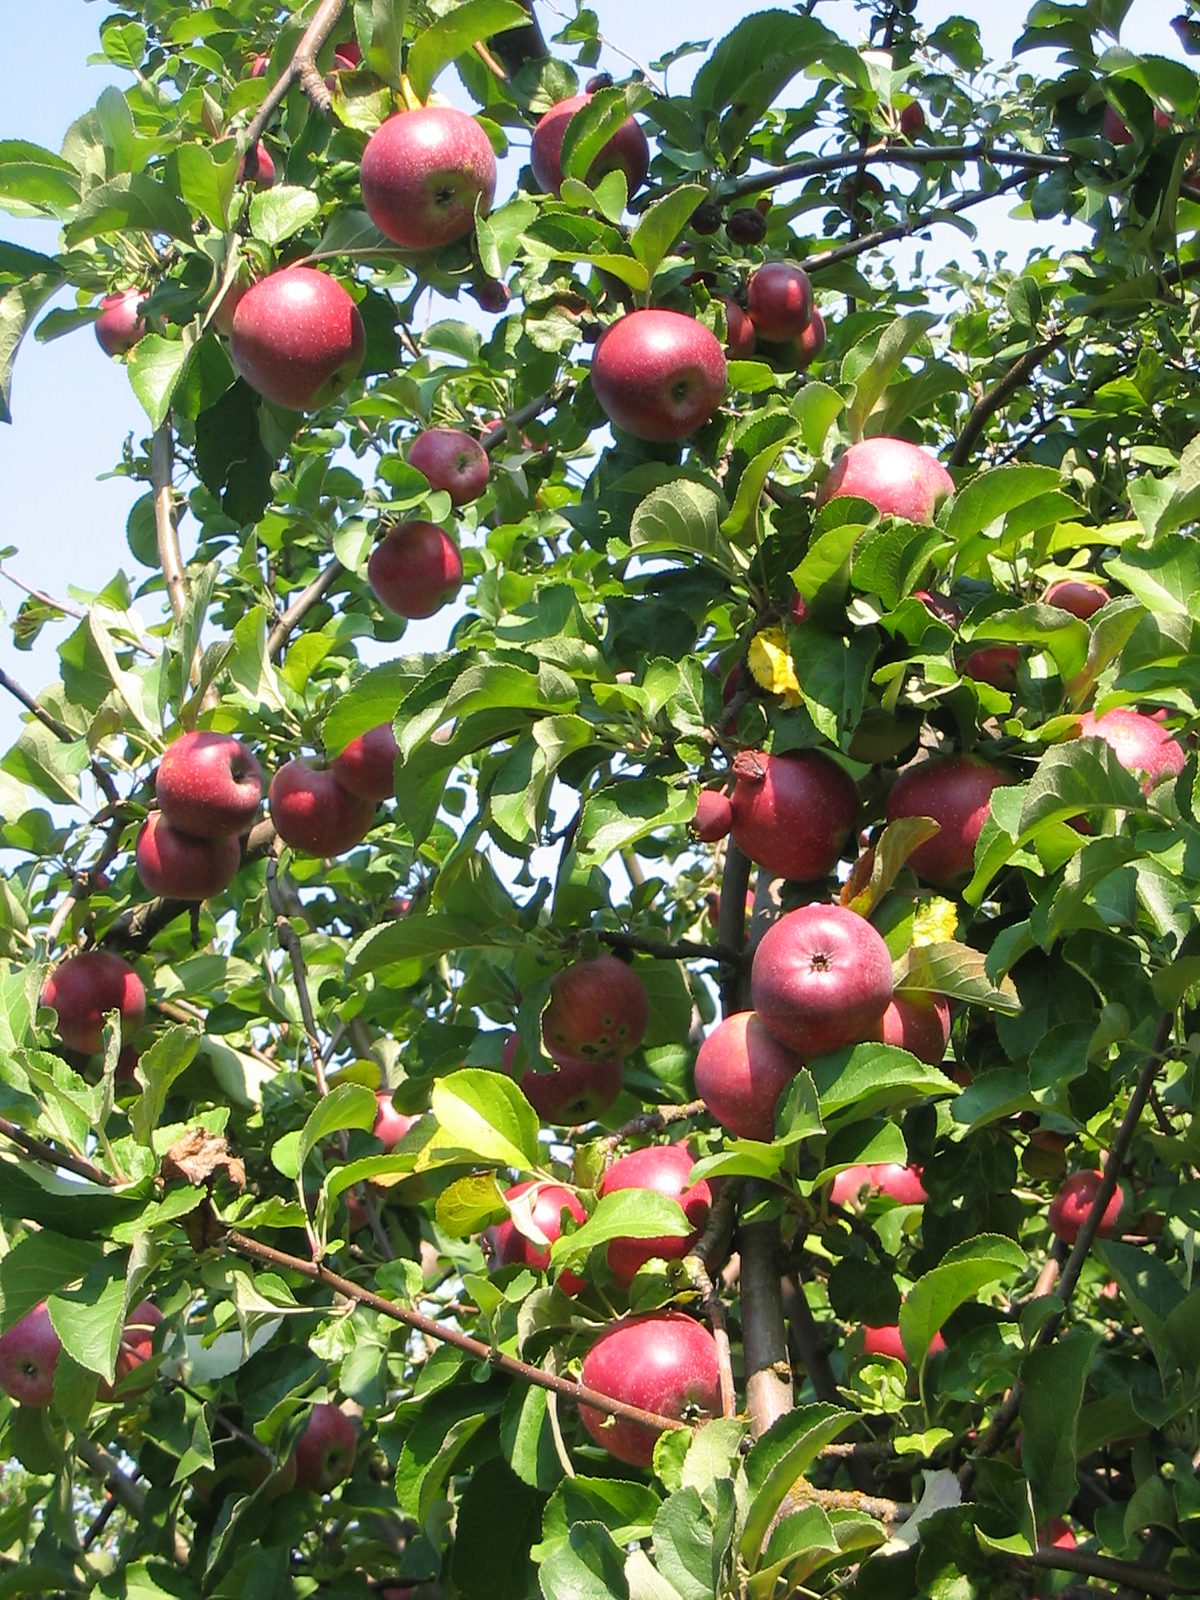 arbol-de-la-manzana-malus-domestica